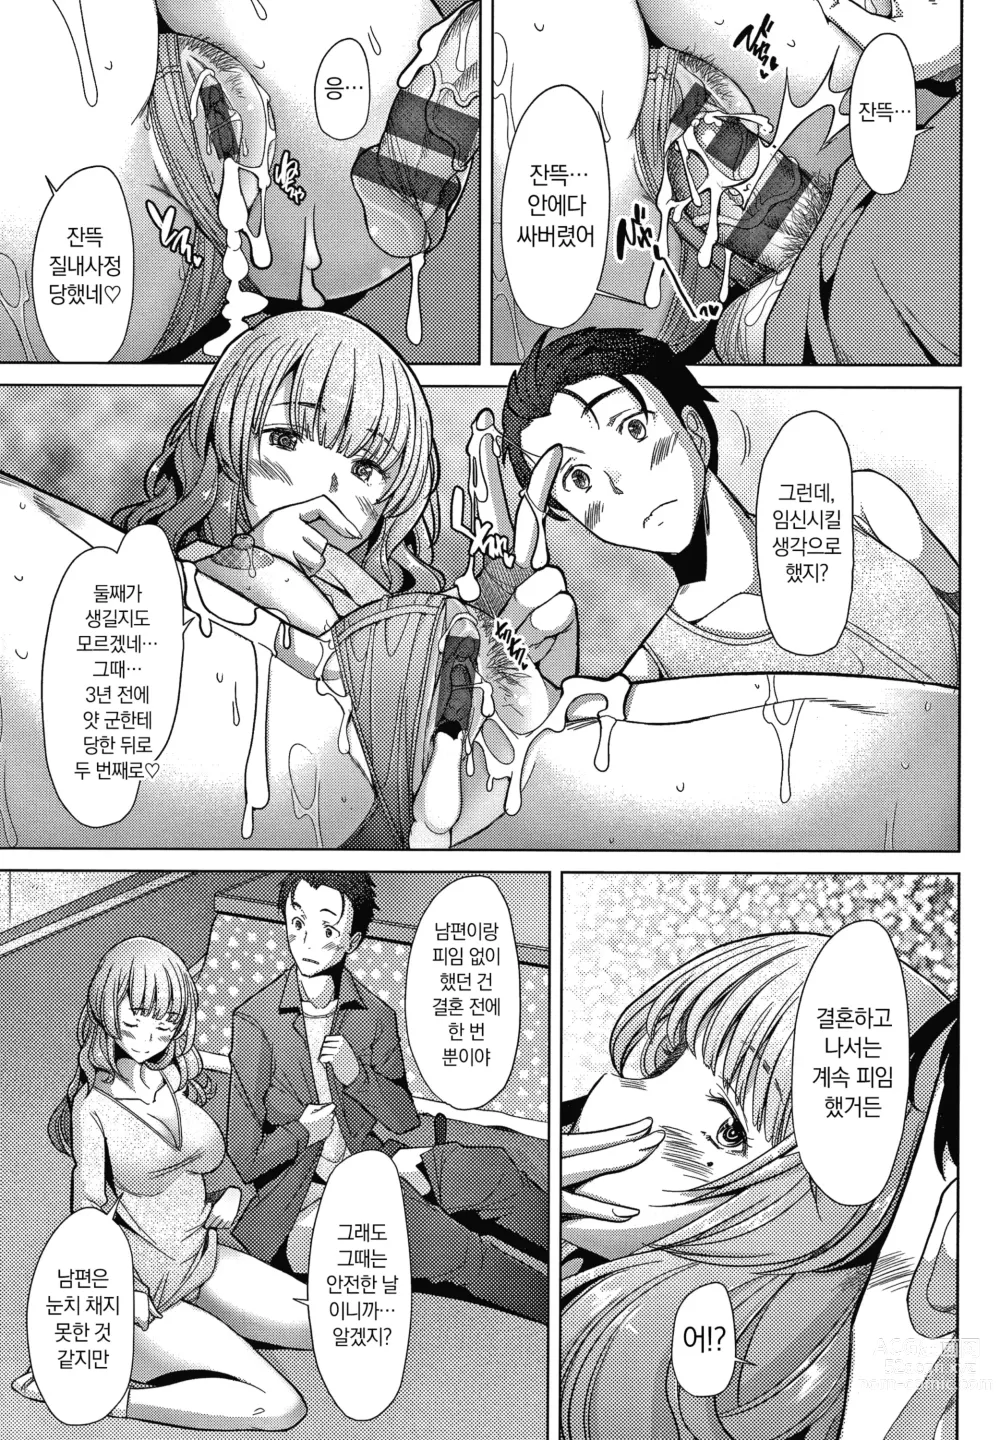 Page 27 of manga 유부녀도 사랑하고 싶어 ~노콘 수정으로 임신하고 싶은 유부녀들~